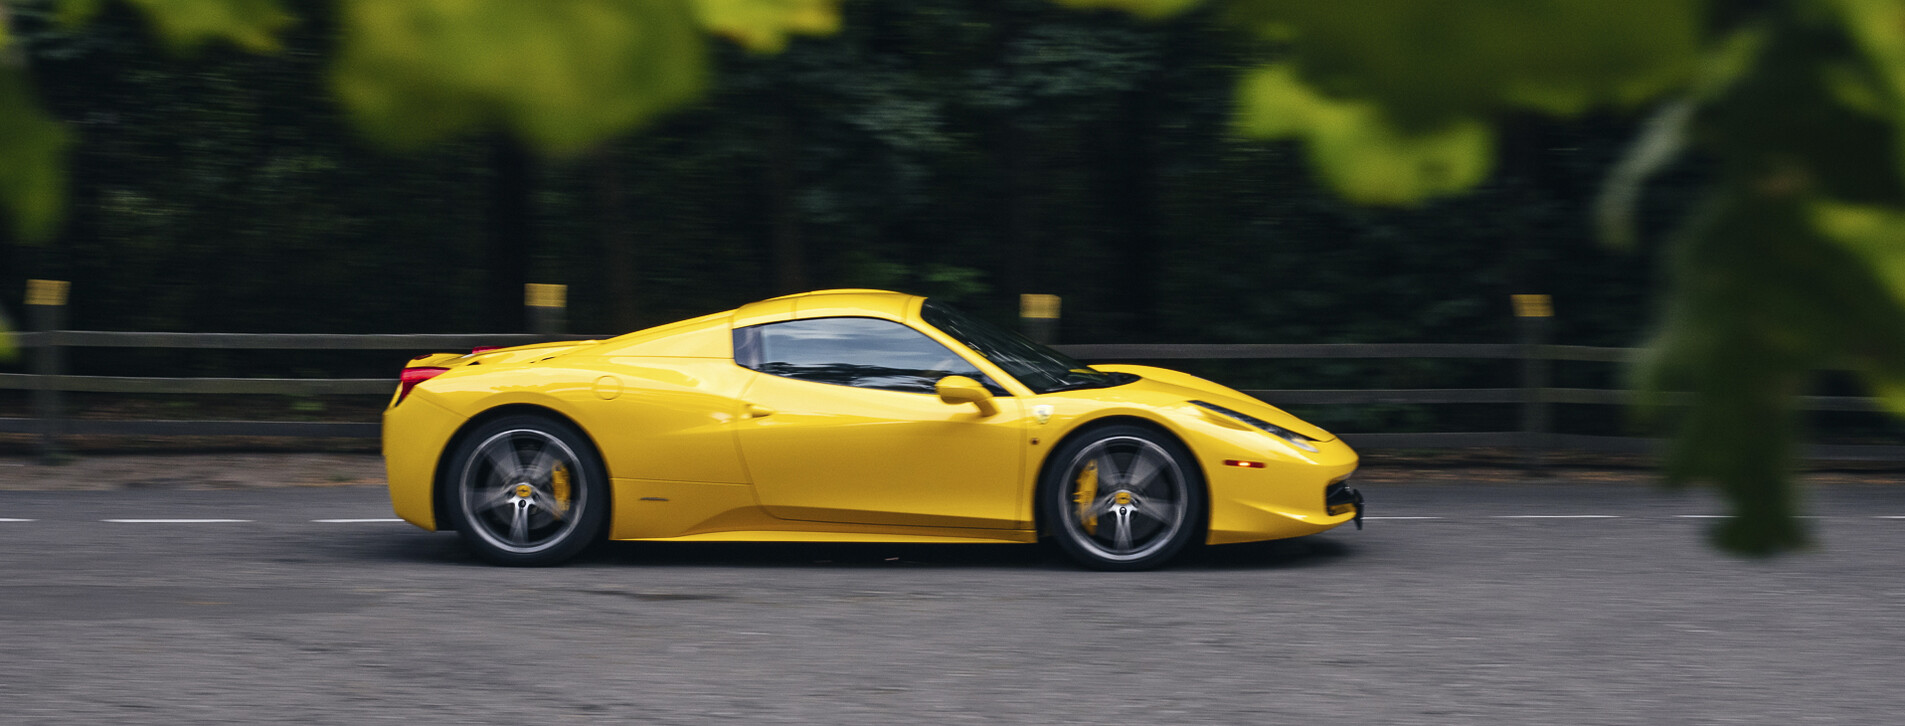 Фото 1 - Тест-драйв суперкара Ferrari